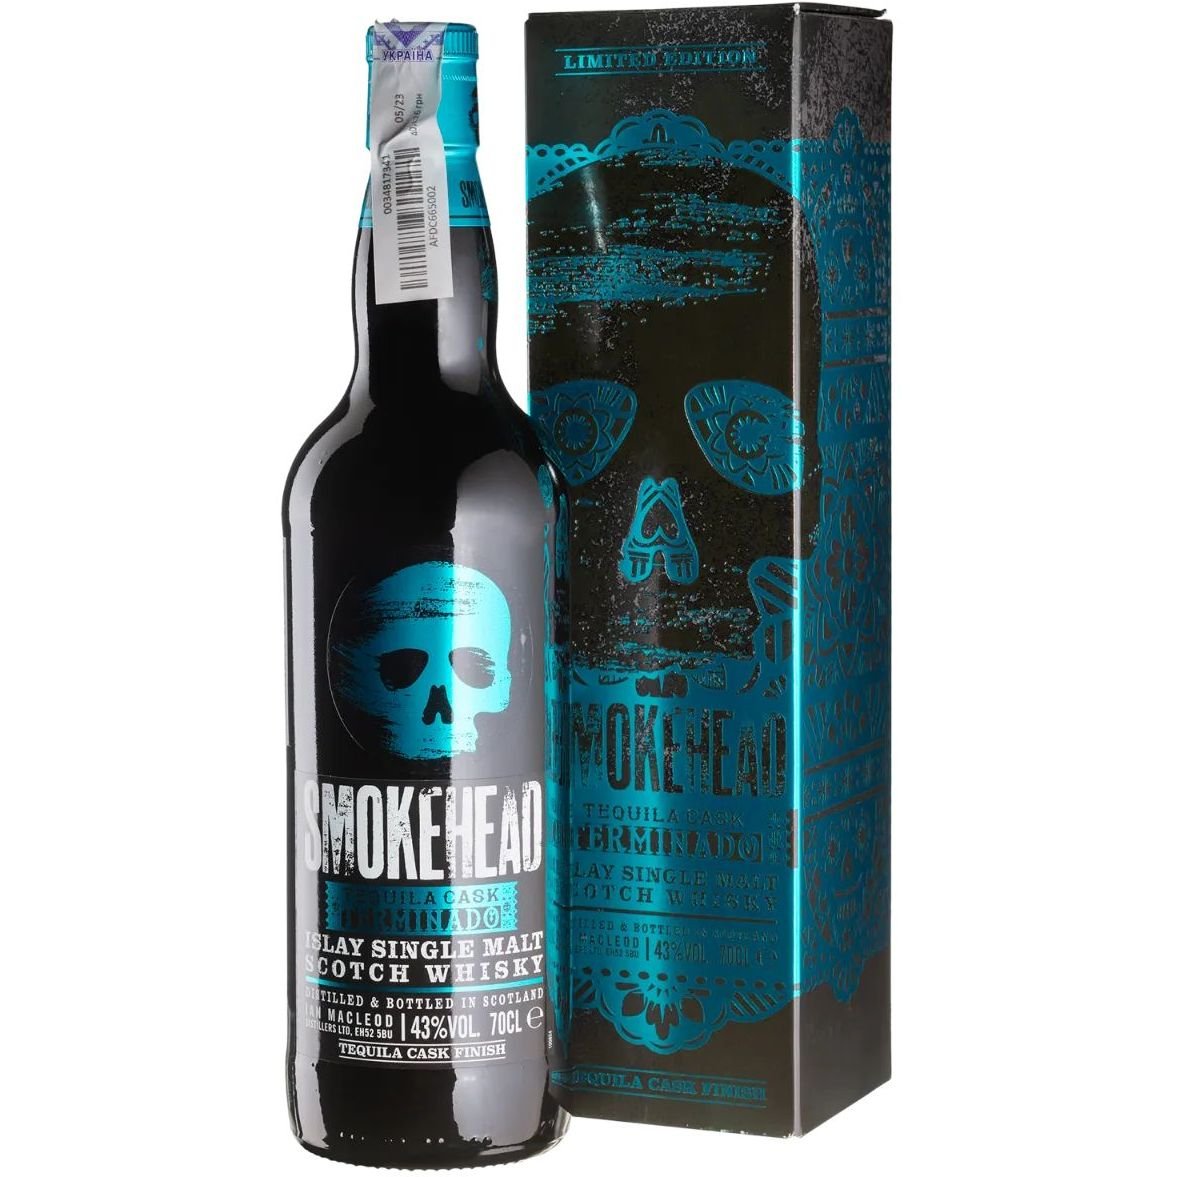 Віскі Smokehead Terminado Tequila Finish Single Malt Scotch Whisky 43% 0.7 л, у подарунковій упаковці - фото 1